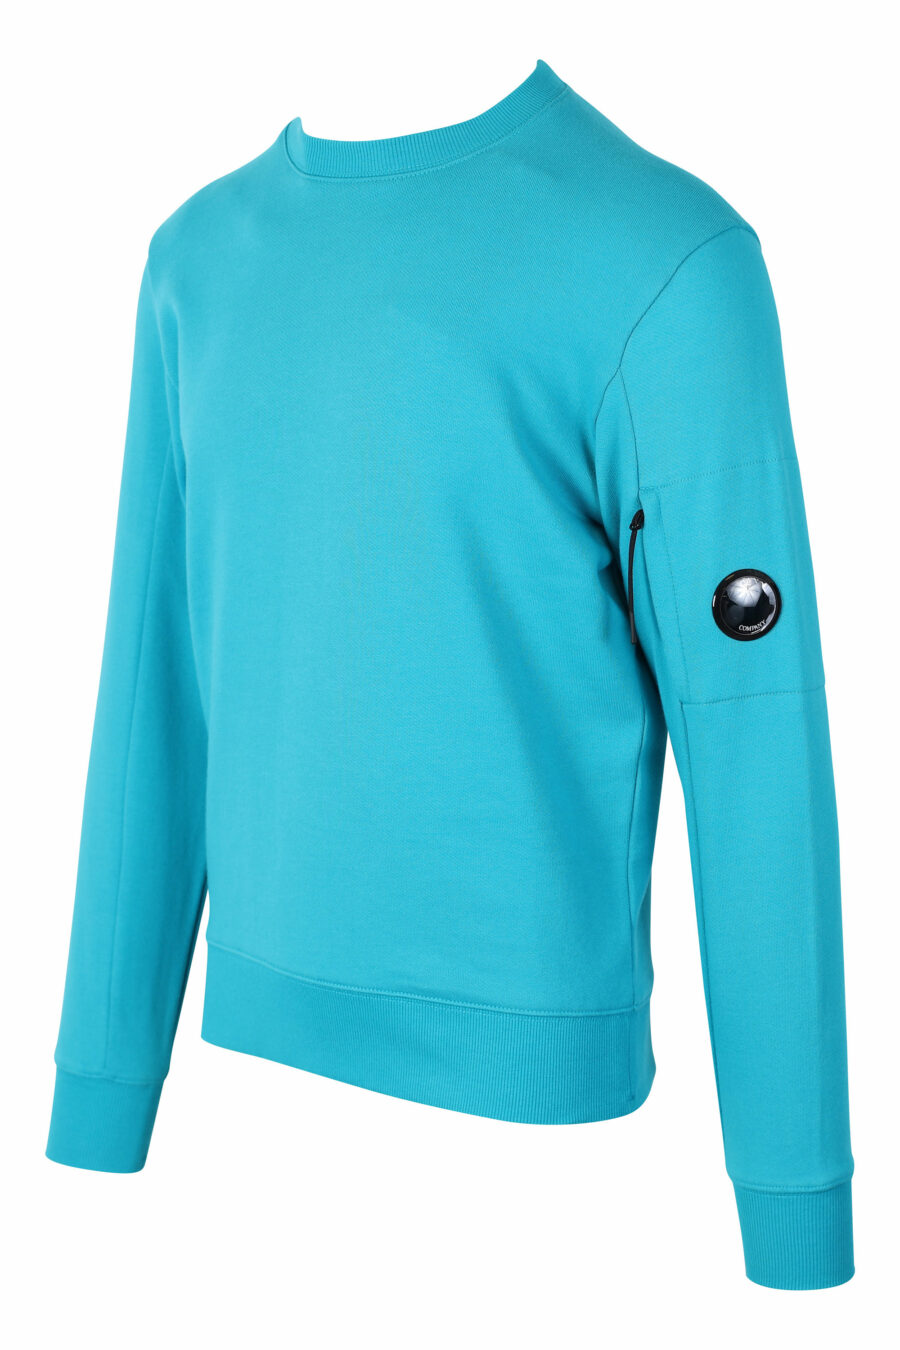 Türkisfarbenes Sweatshirt mit rundem Mini-Logo an der Seite - IMG 2395